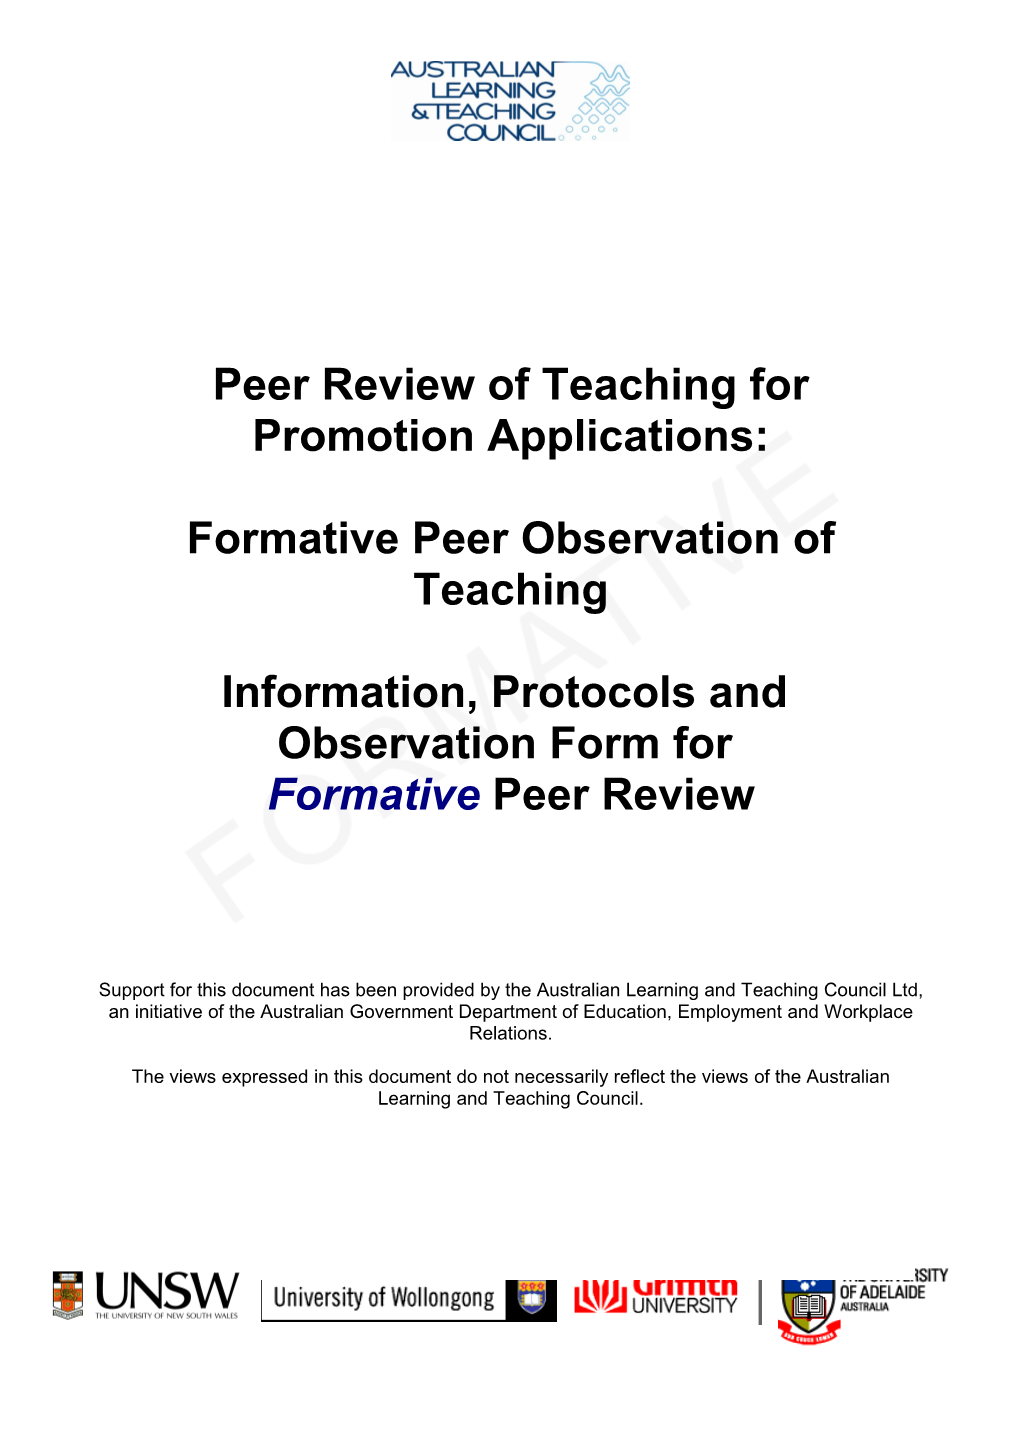 External Peer Review of Teaching